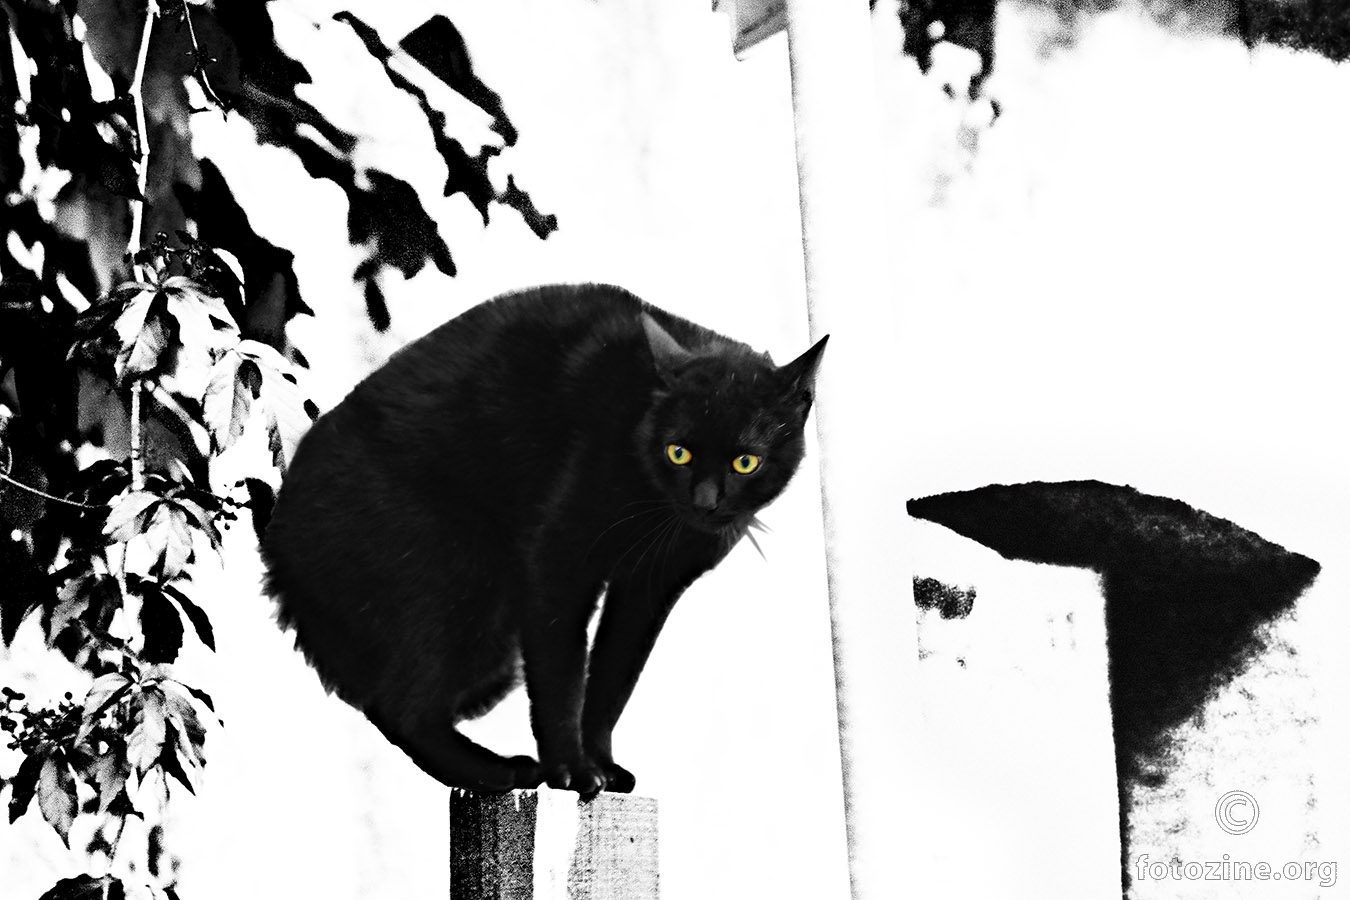 Crni mačor...